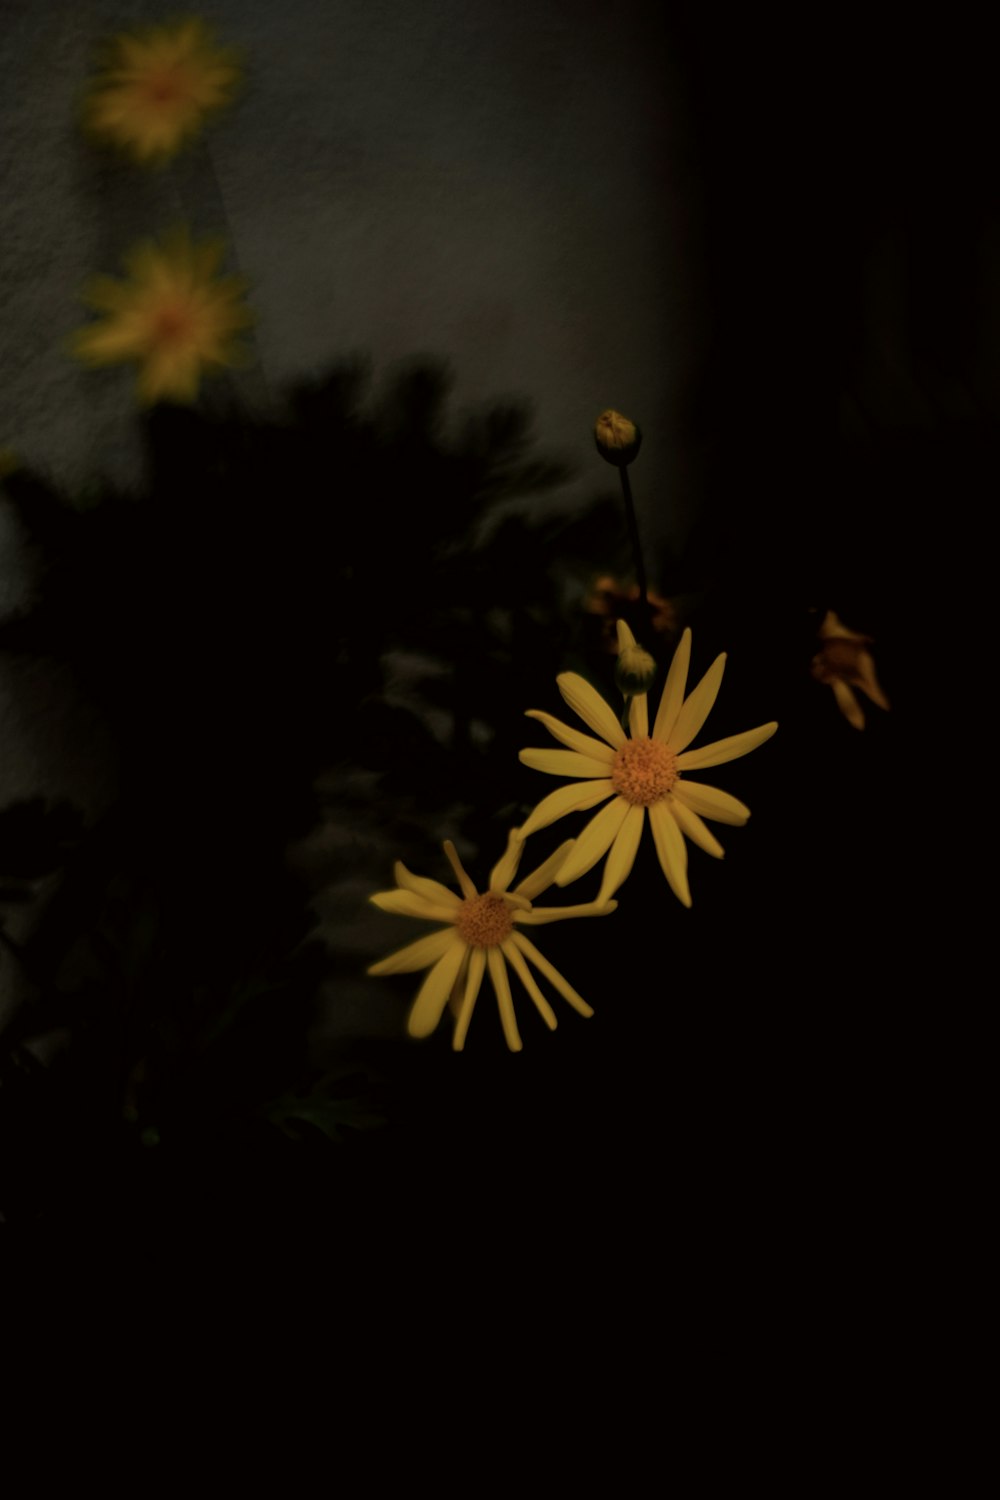 fiore giallo e nero nella fotografia ravvicinata